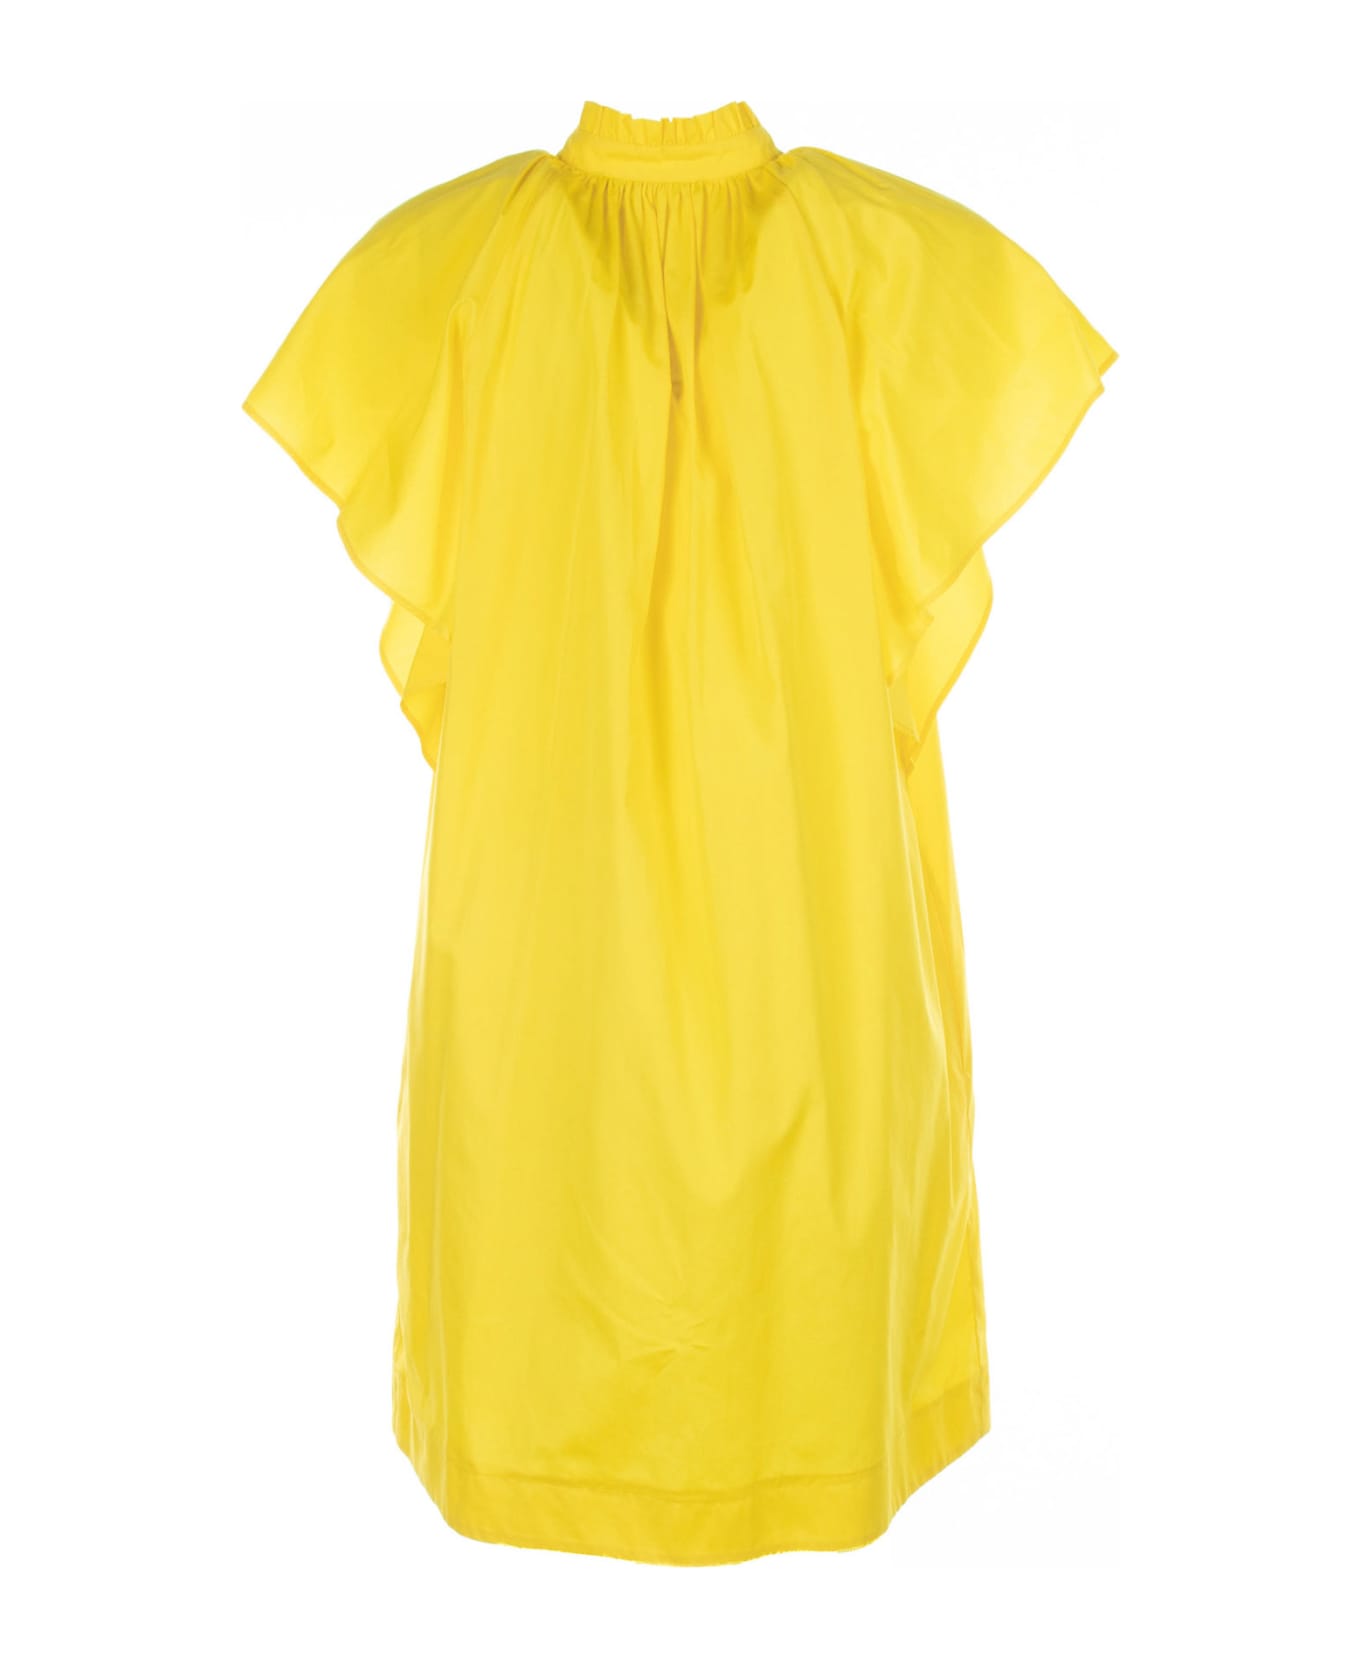 Max Mara Studio Yellow Cotton Midi Dress - GIALLO